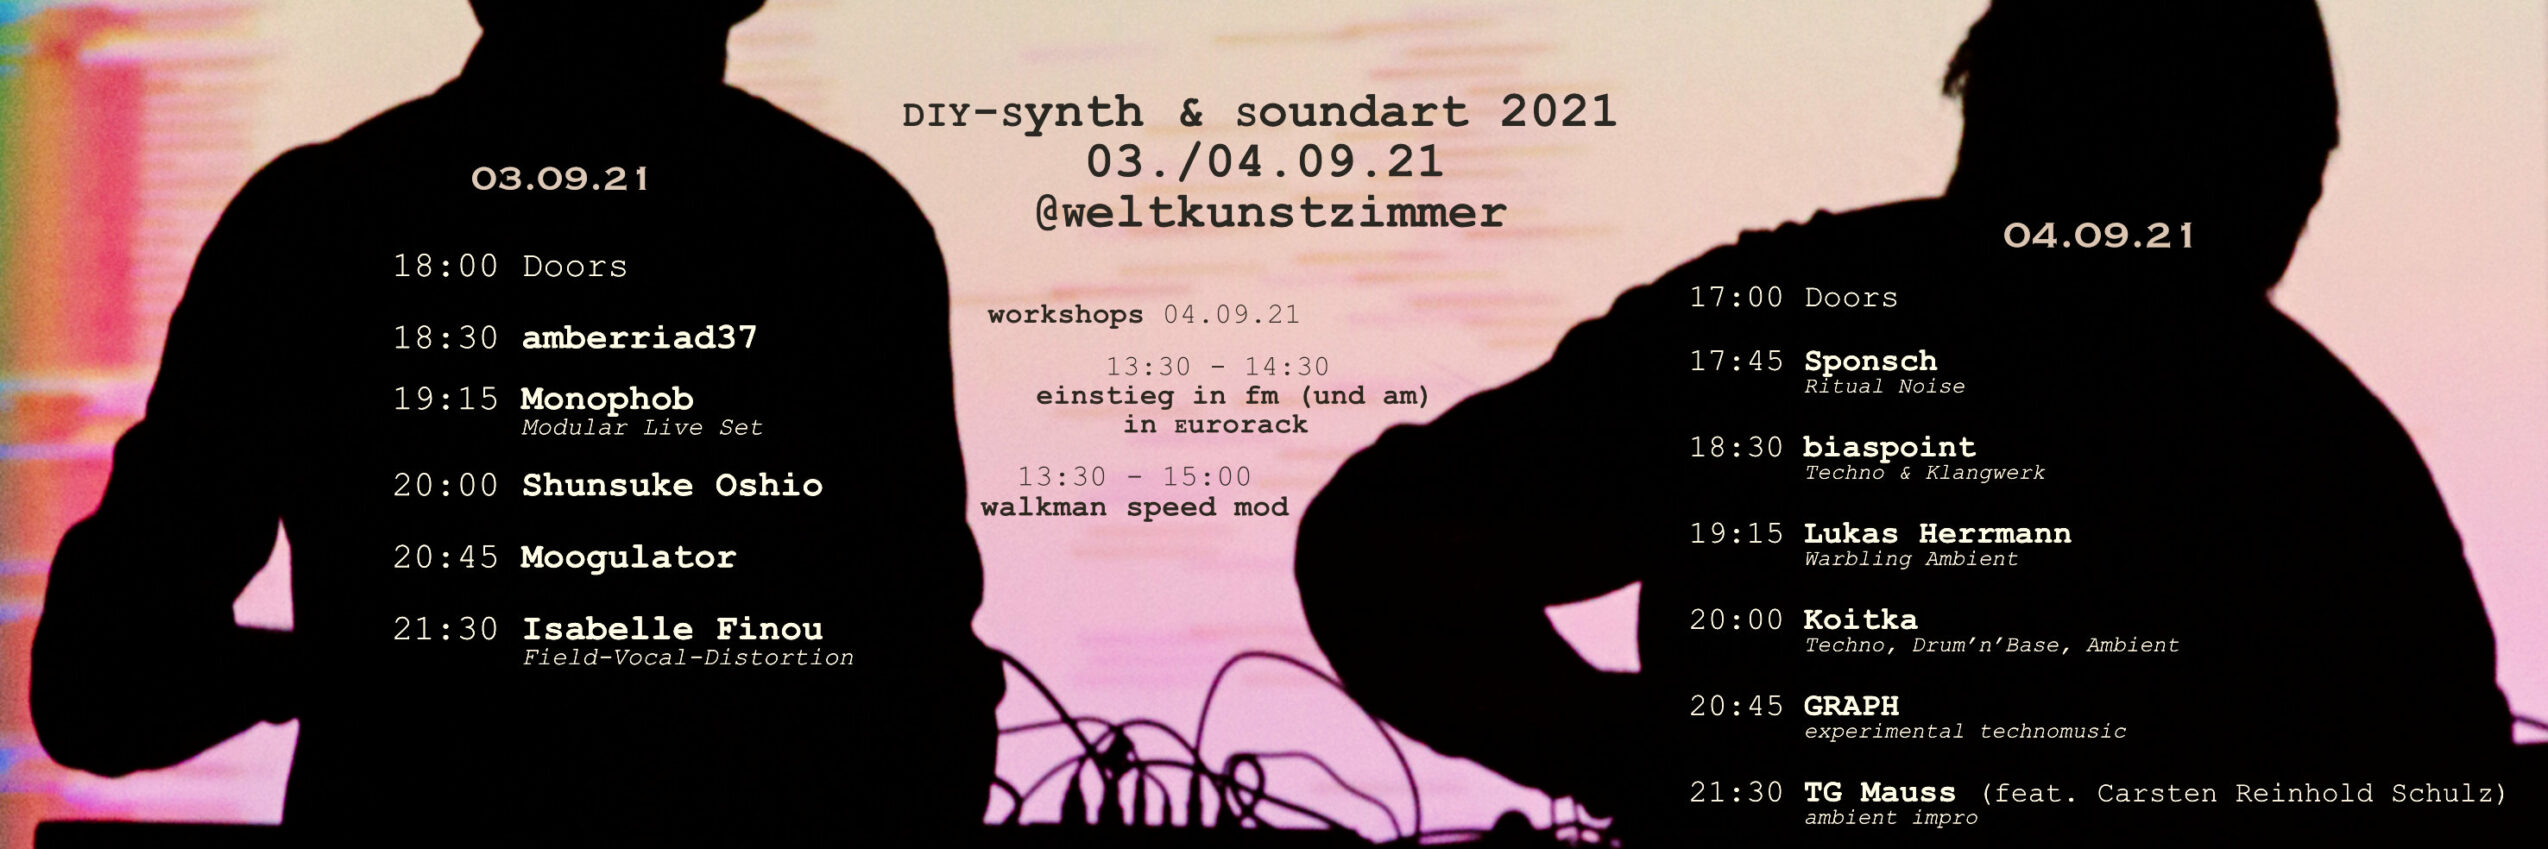 DIY-SYNTH & SOUNDART // DÜSSELDORF 03-04.09.21 WELTKUNSTZIMMER